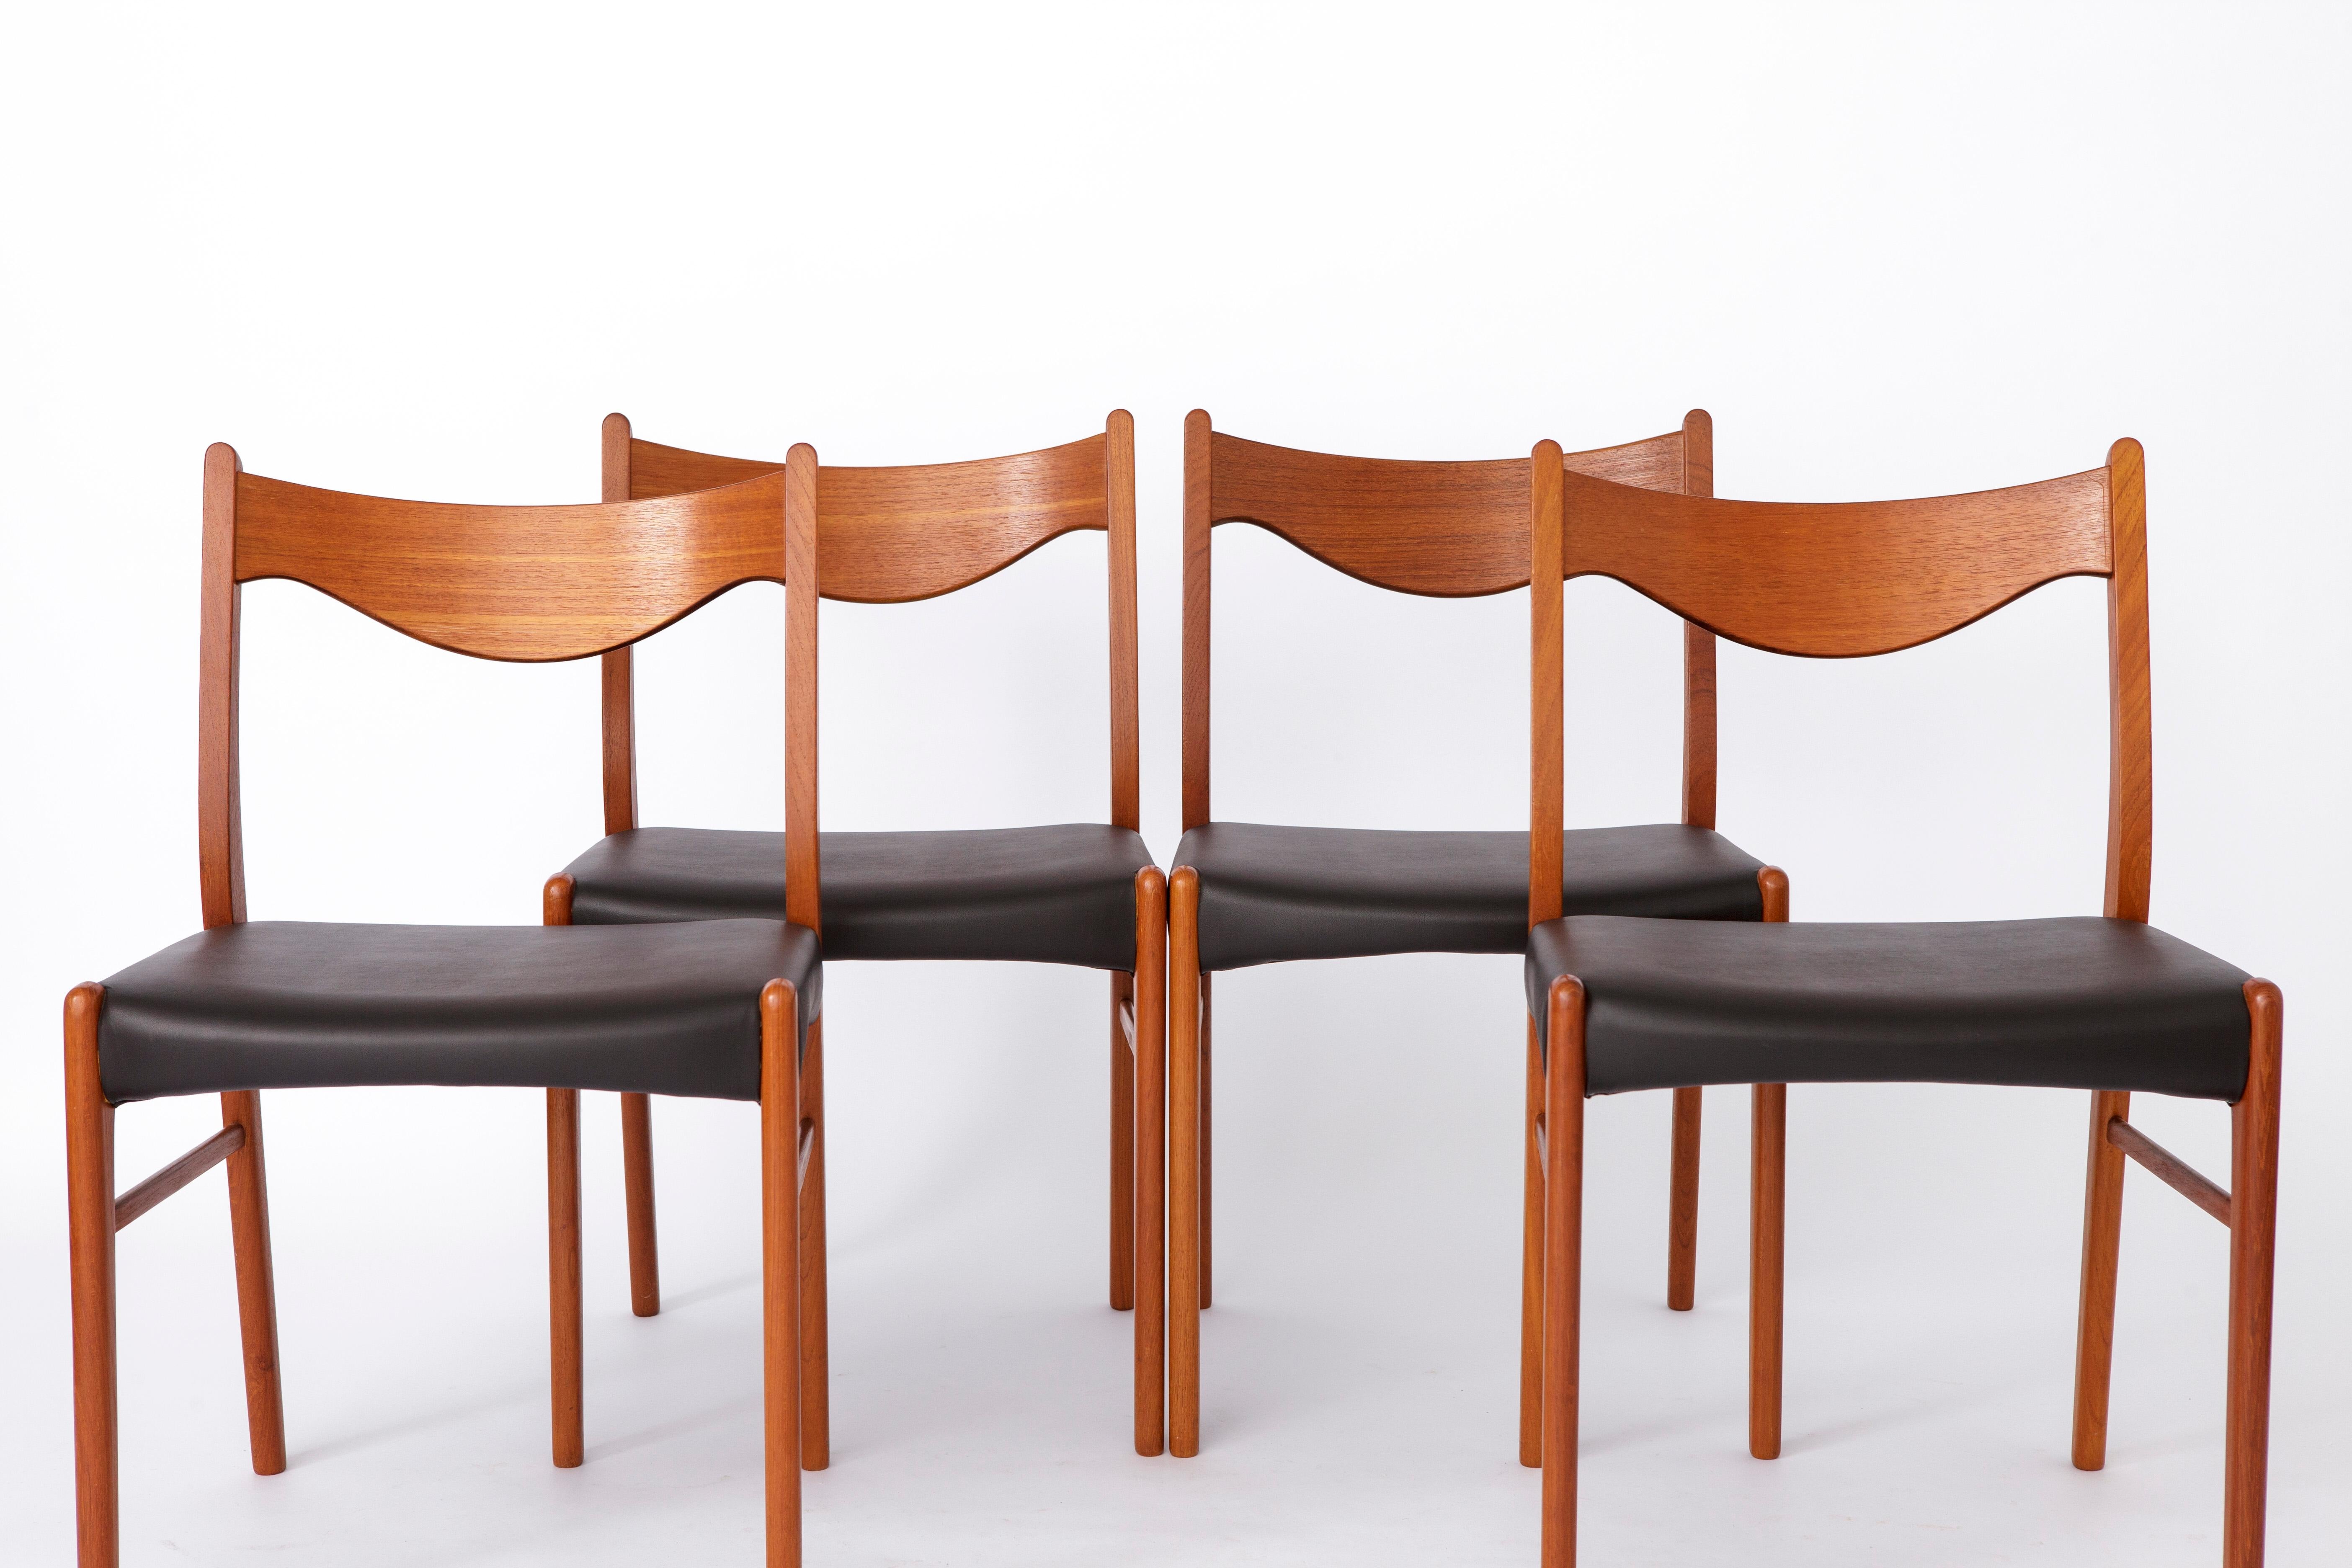 Satz von 4 Stühlen, entworfen von Arne Wahl Iversen für den Hersteller Glyngøre stolefabrik in den 1960er Jahren. 
Modell: GS61 aus den 1960er Jahren. 
Der angezeigte Preis gilt für einen Satz von 4 Stühlen. 

Alle Stühle sind nach der Restaurierung